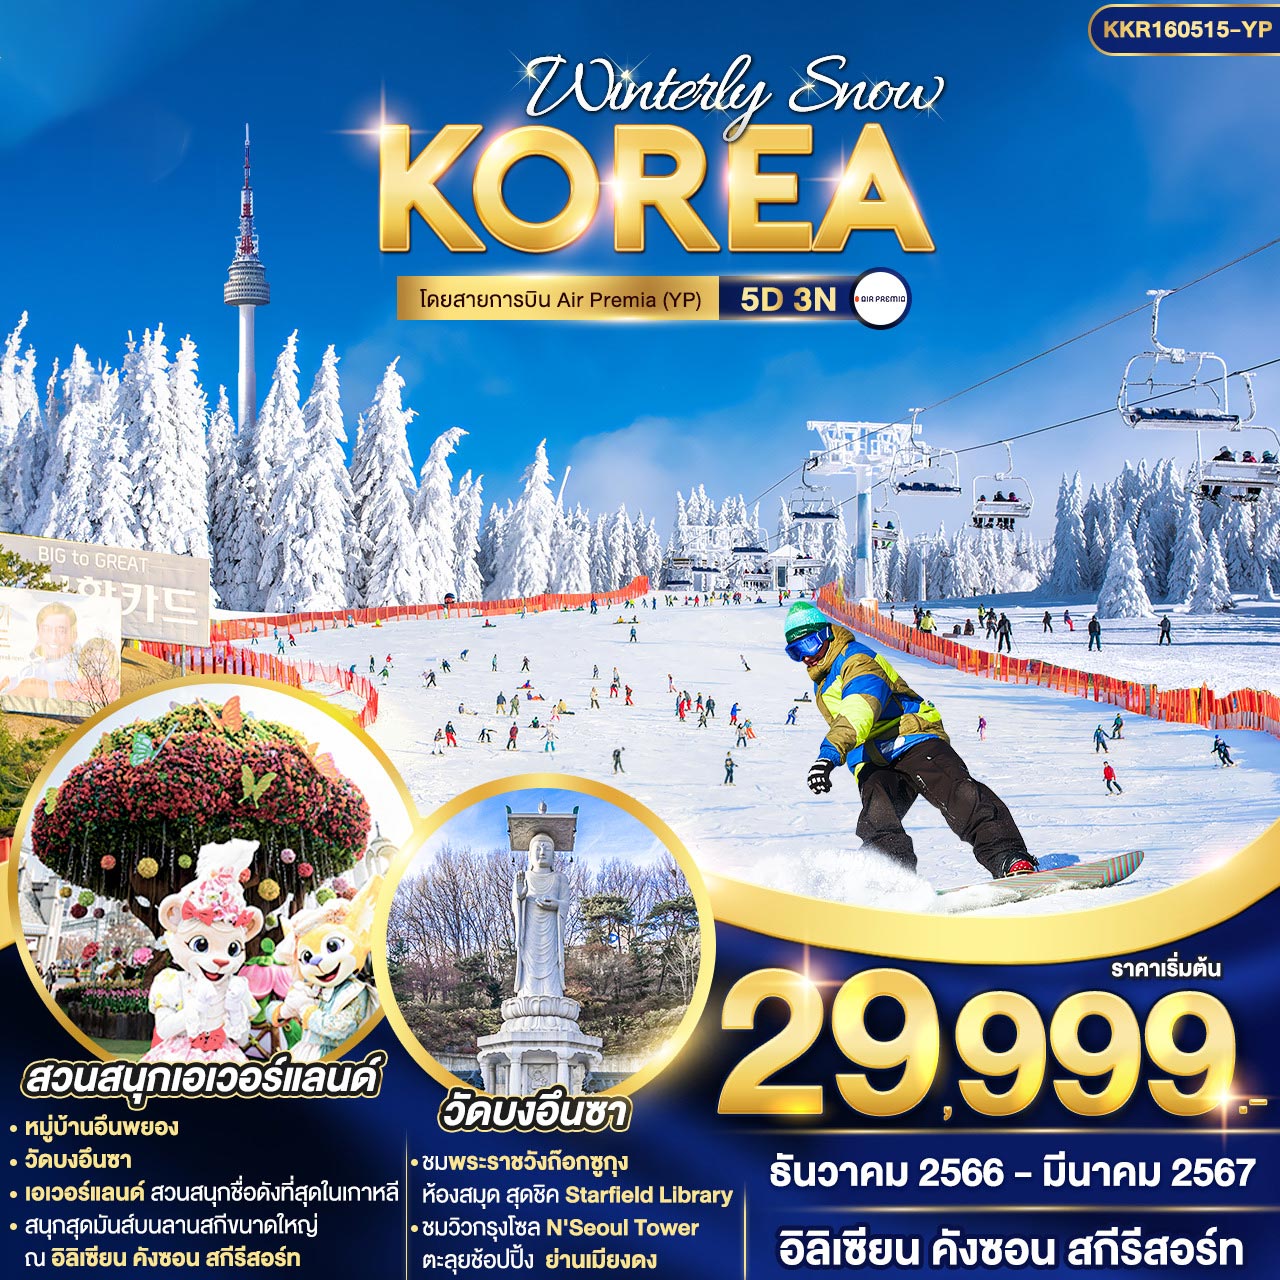 ทัวร์เกาหลี WINTERLY SNOW KOREA 5วัน 3คืน